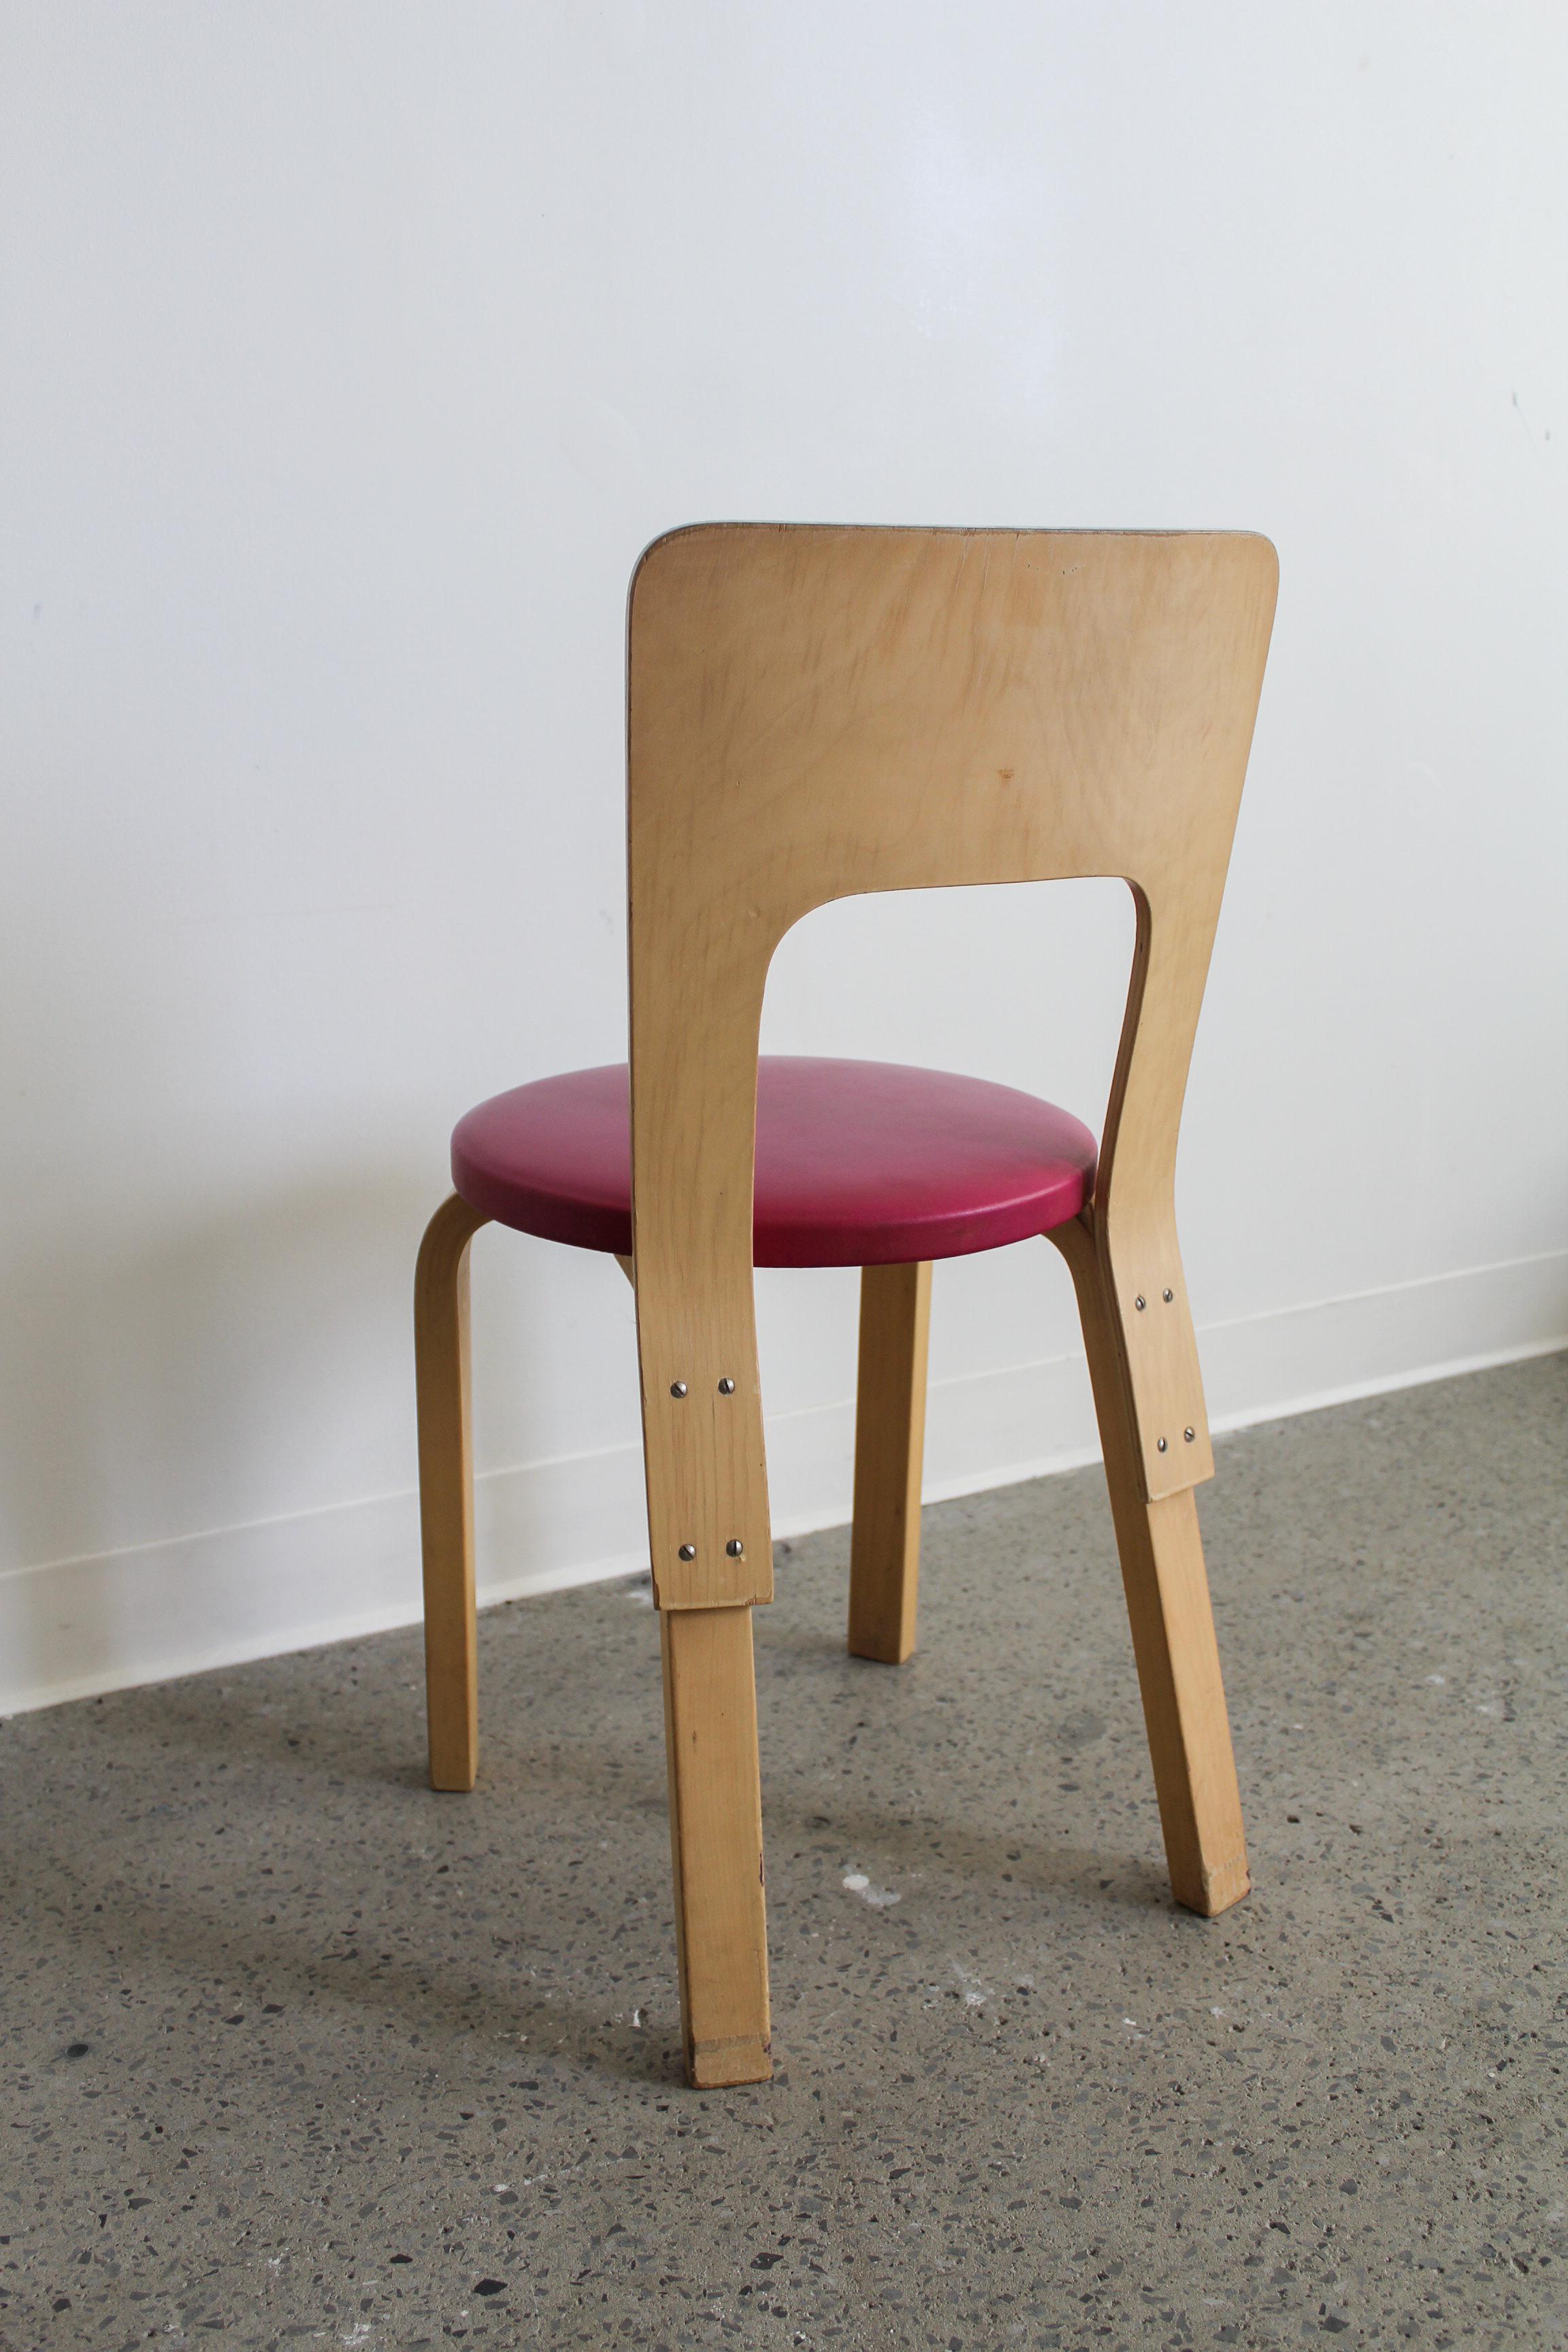 Model 66 Stuhl von Alvar Aalto für Artek, 1960er Jahre. Gestell aus Birkenholz mit gepolstertem Sitz in Fuchsia.

In gutem Vintage-Zustand, kleiner Riss in der Sitzfläche und Abnutzung am Holzrücken.

Abmessungen: 30 